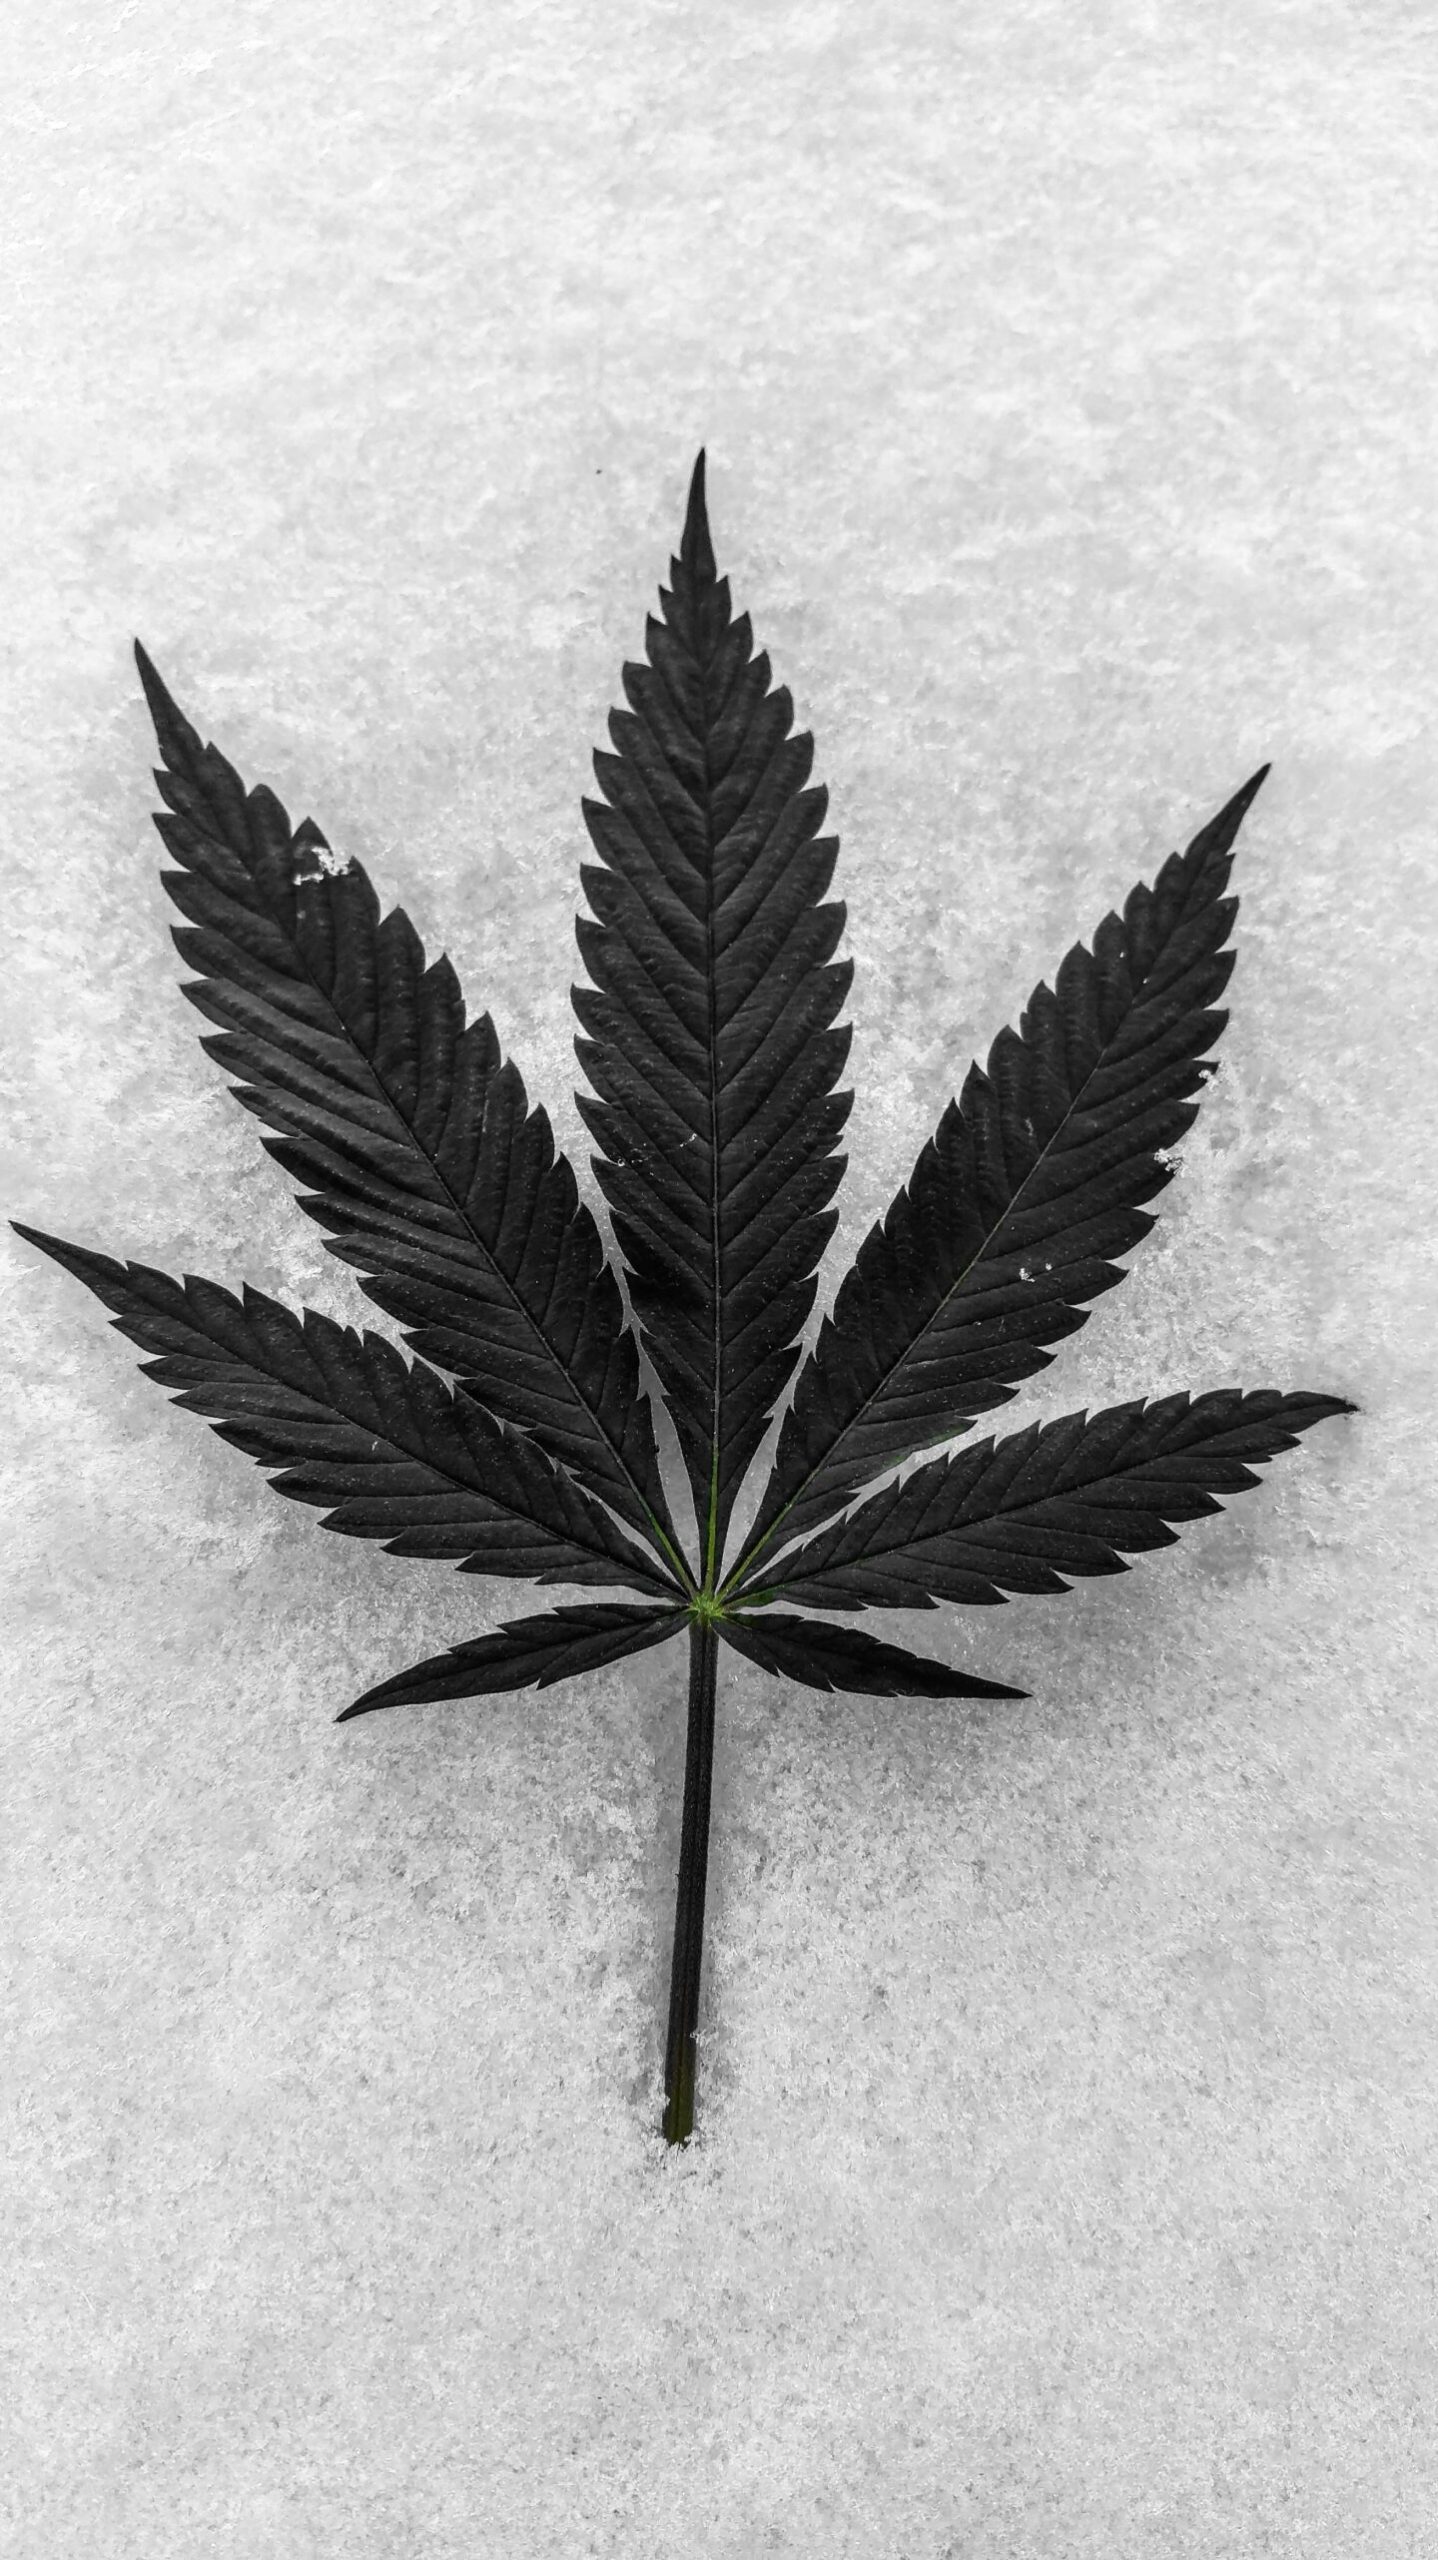 La cannabis che cura – Novembre 2021